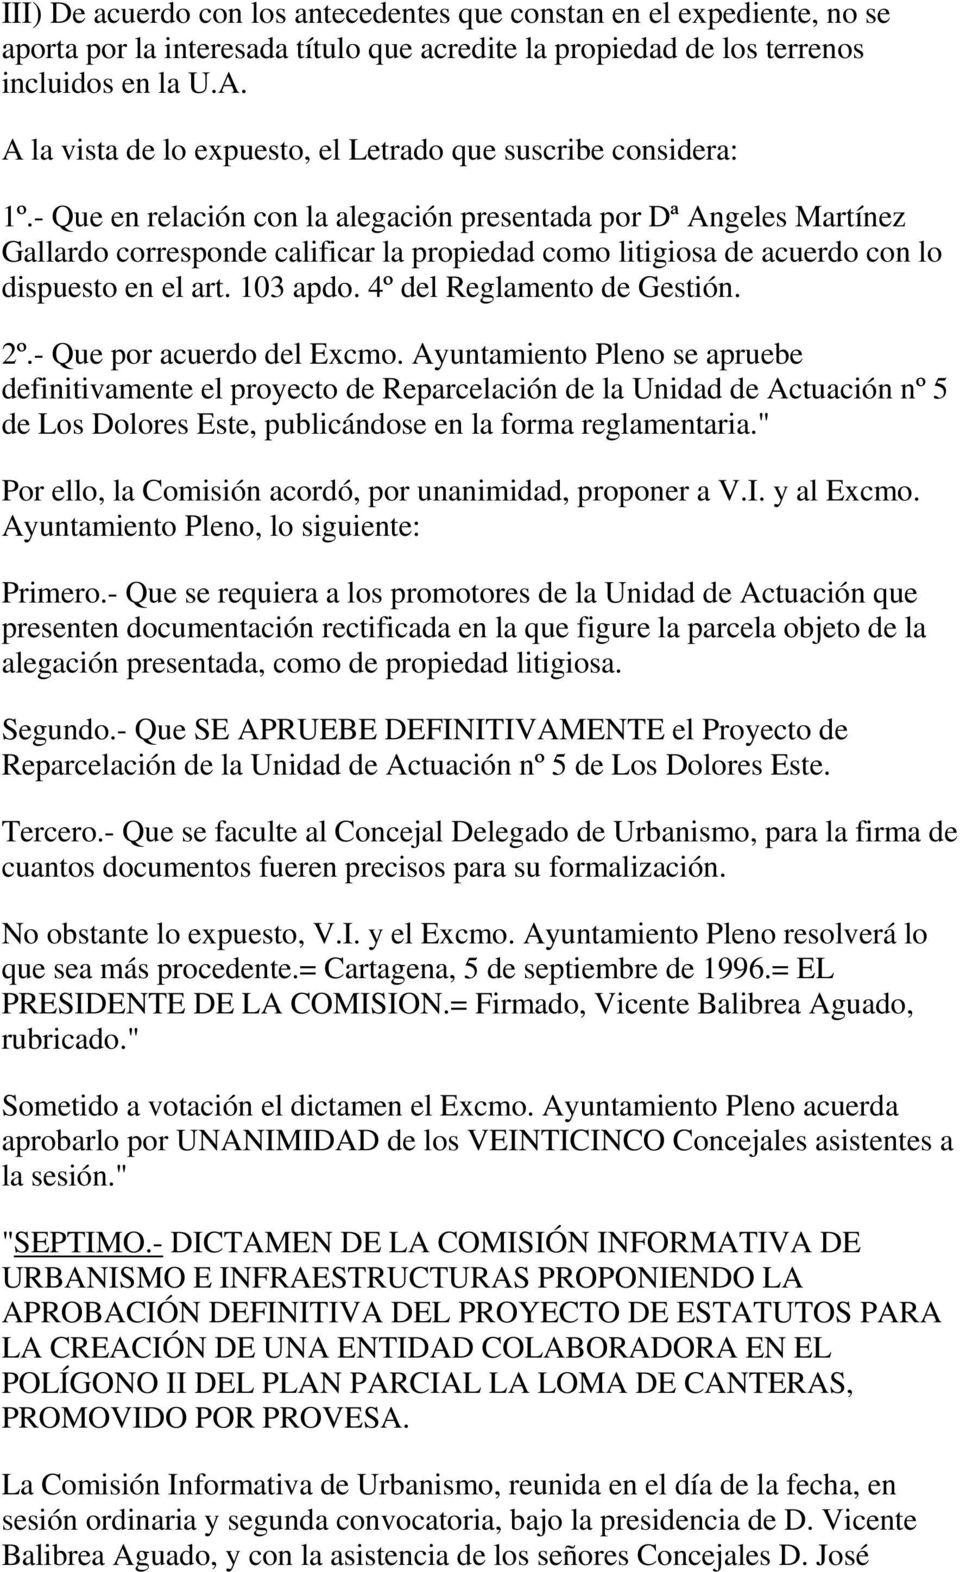 - Que en relación con la alegación presentada por Dª Angeles Martínez Gallardo corresponde calificar la propiedad como litigiosa de acuerdo con lo dispuesto en el art. 103 apdo.